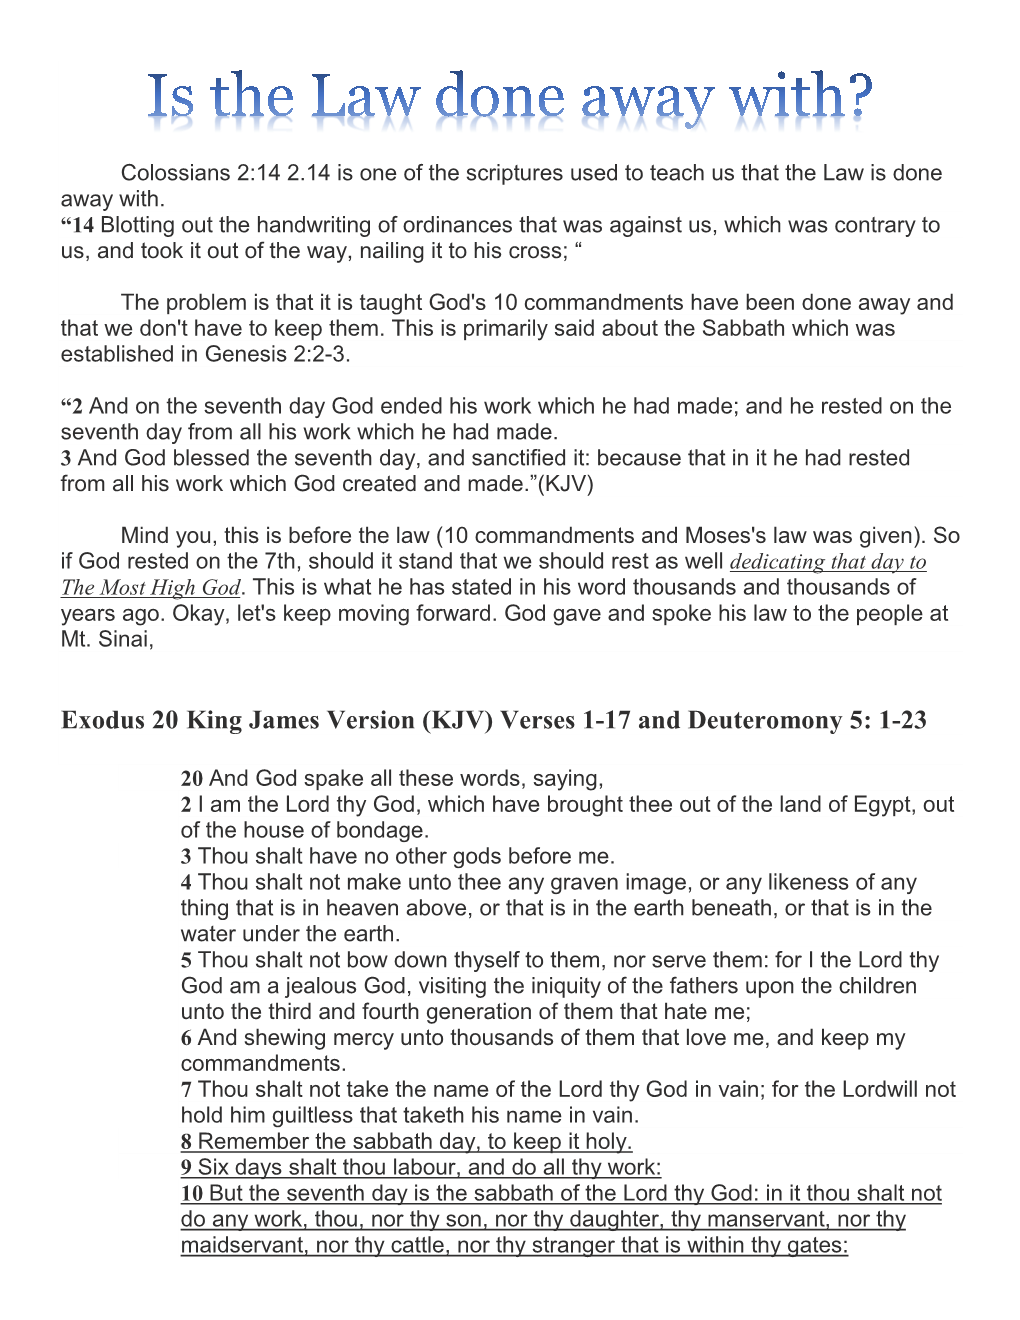 Exodus 20 King James Version (KJV) Verses 1-17 and Deuteromony 5: 1-23